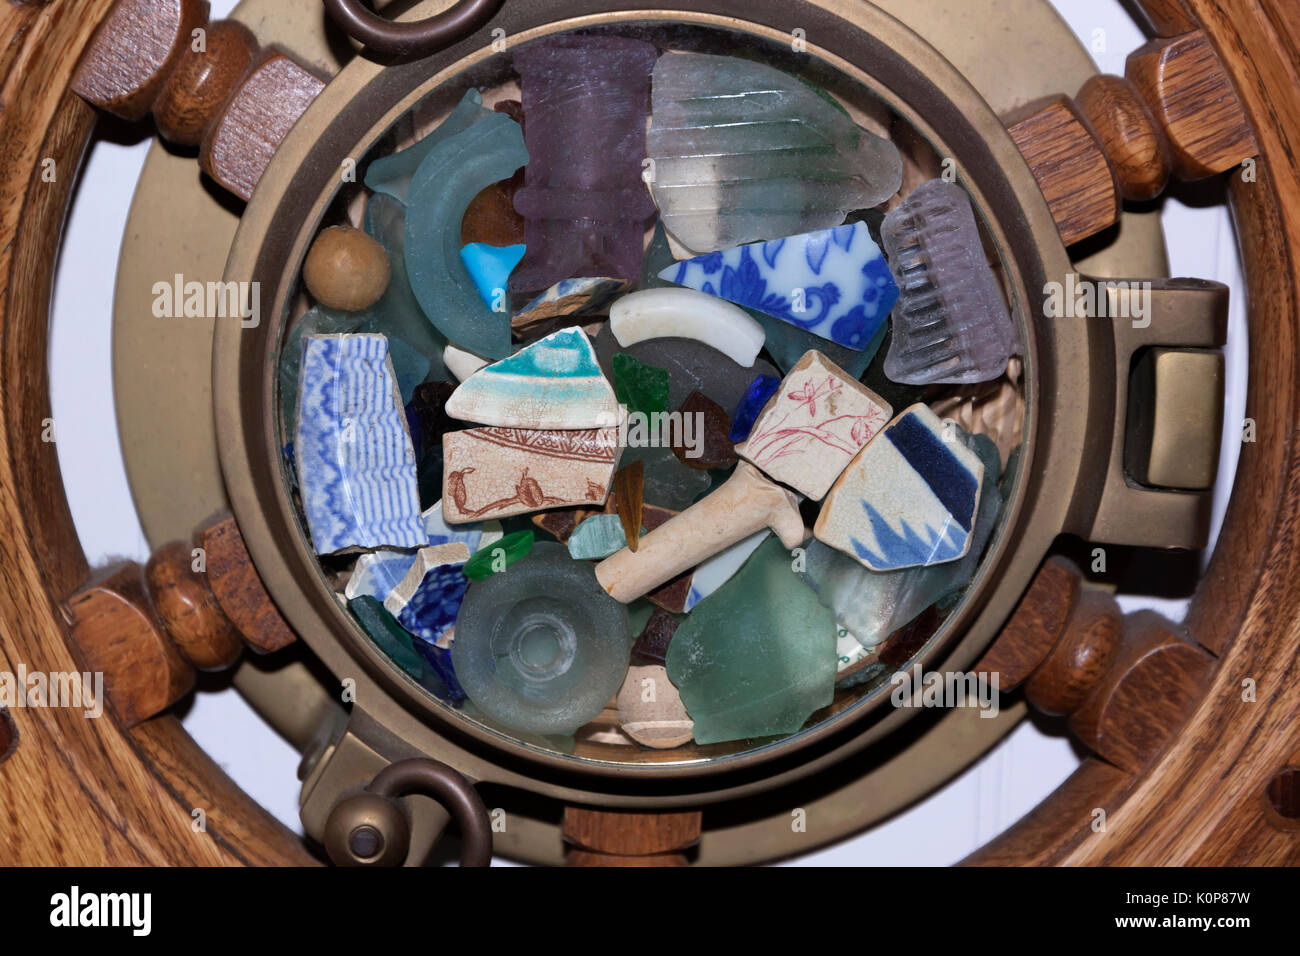 Meer Glas, Keramik, Risse & Objekte gefunden unter Glas in einem Schiff Rad angezeigt. Stockfoto